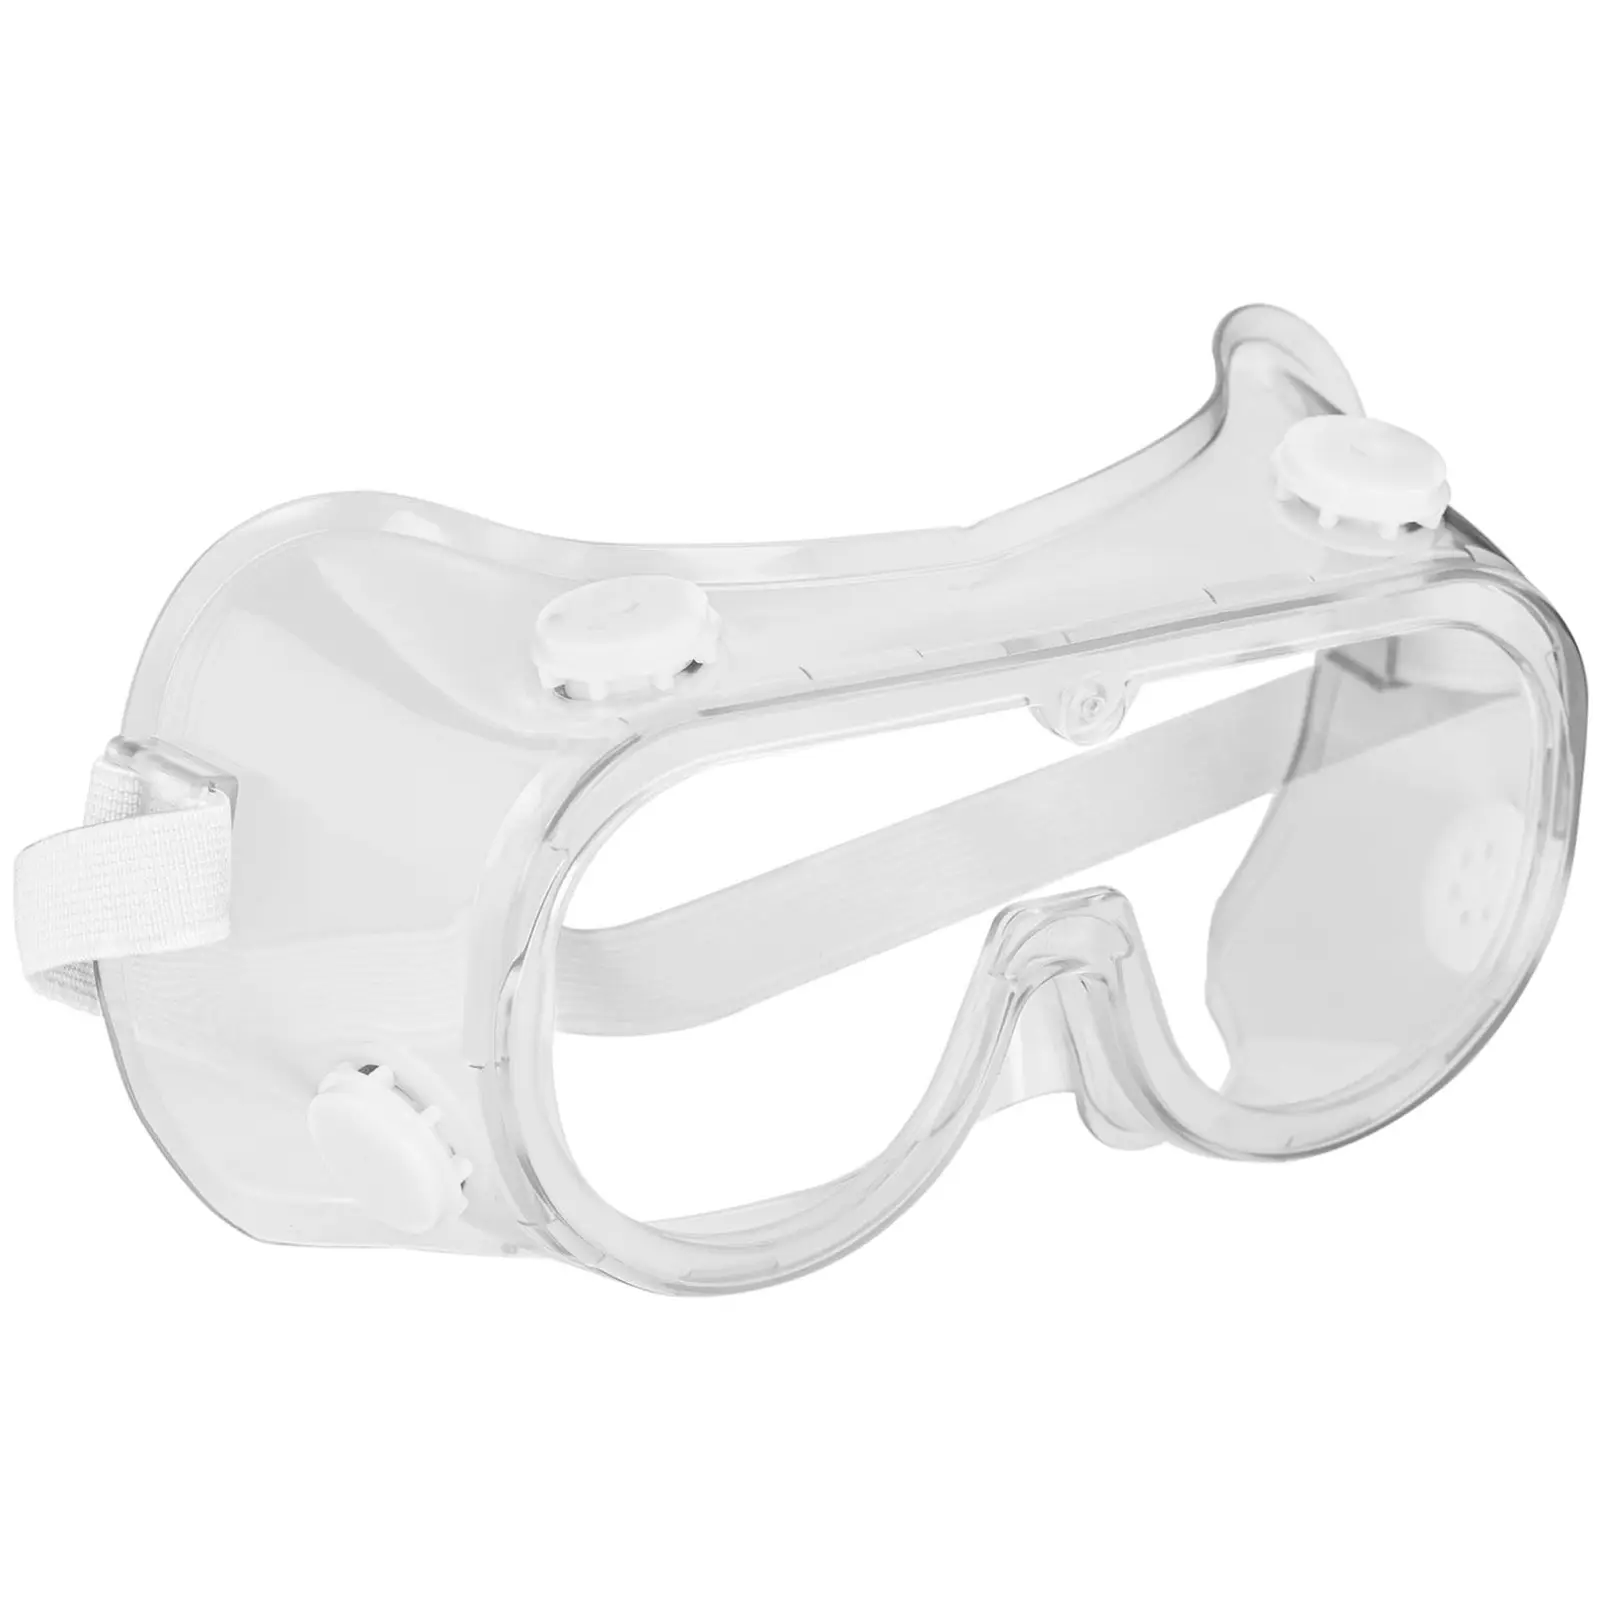 Beskyttelsesbriller - 3 stk. - klart glas - universalstørrelse